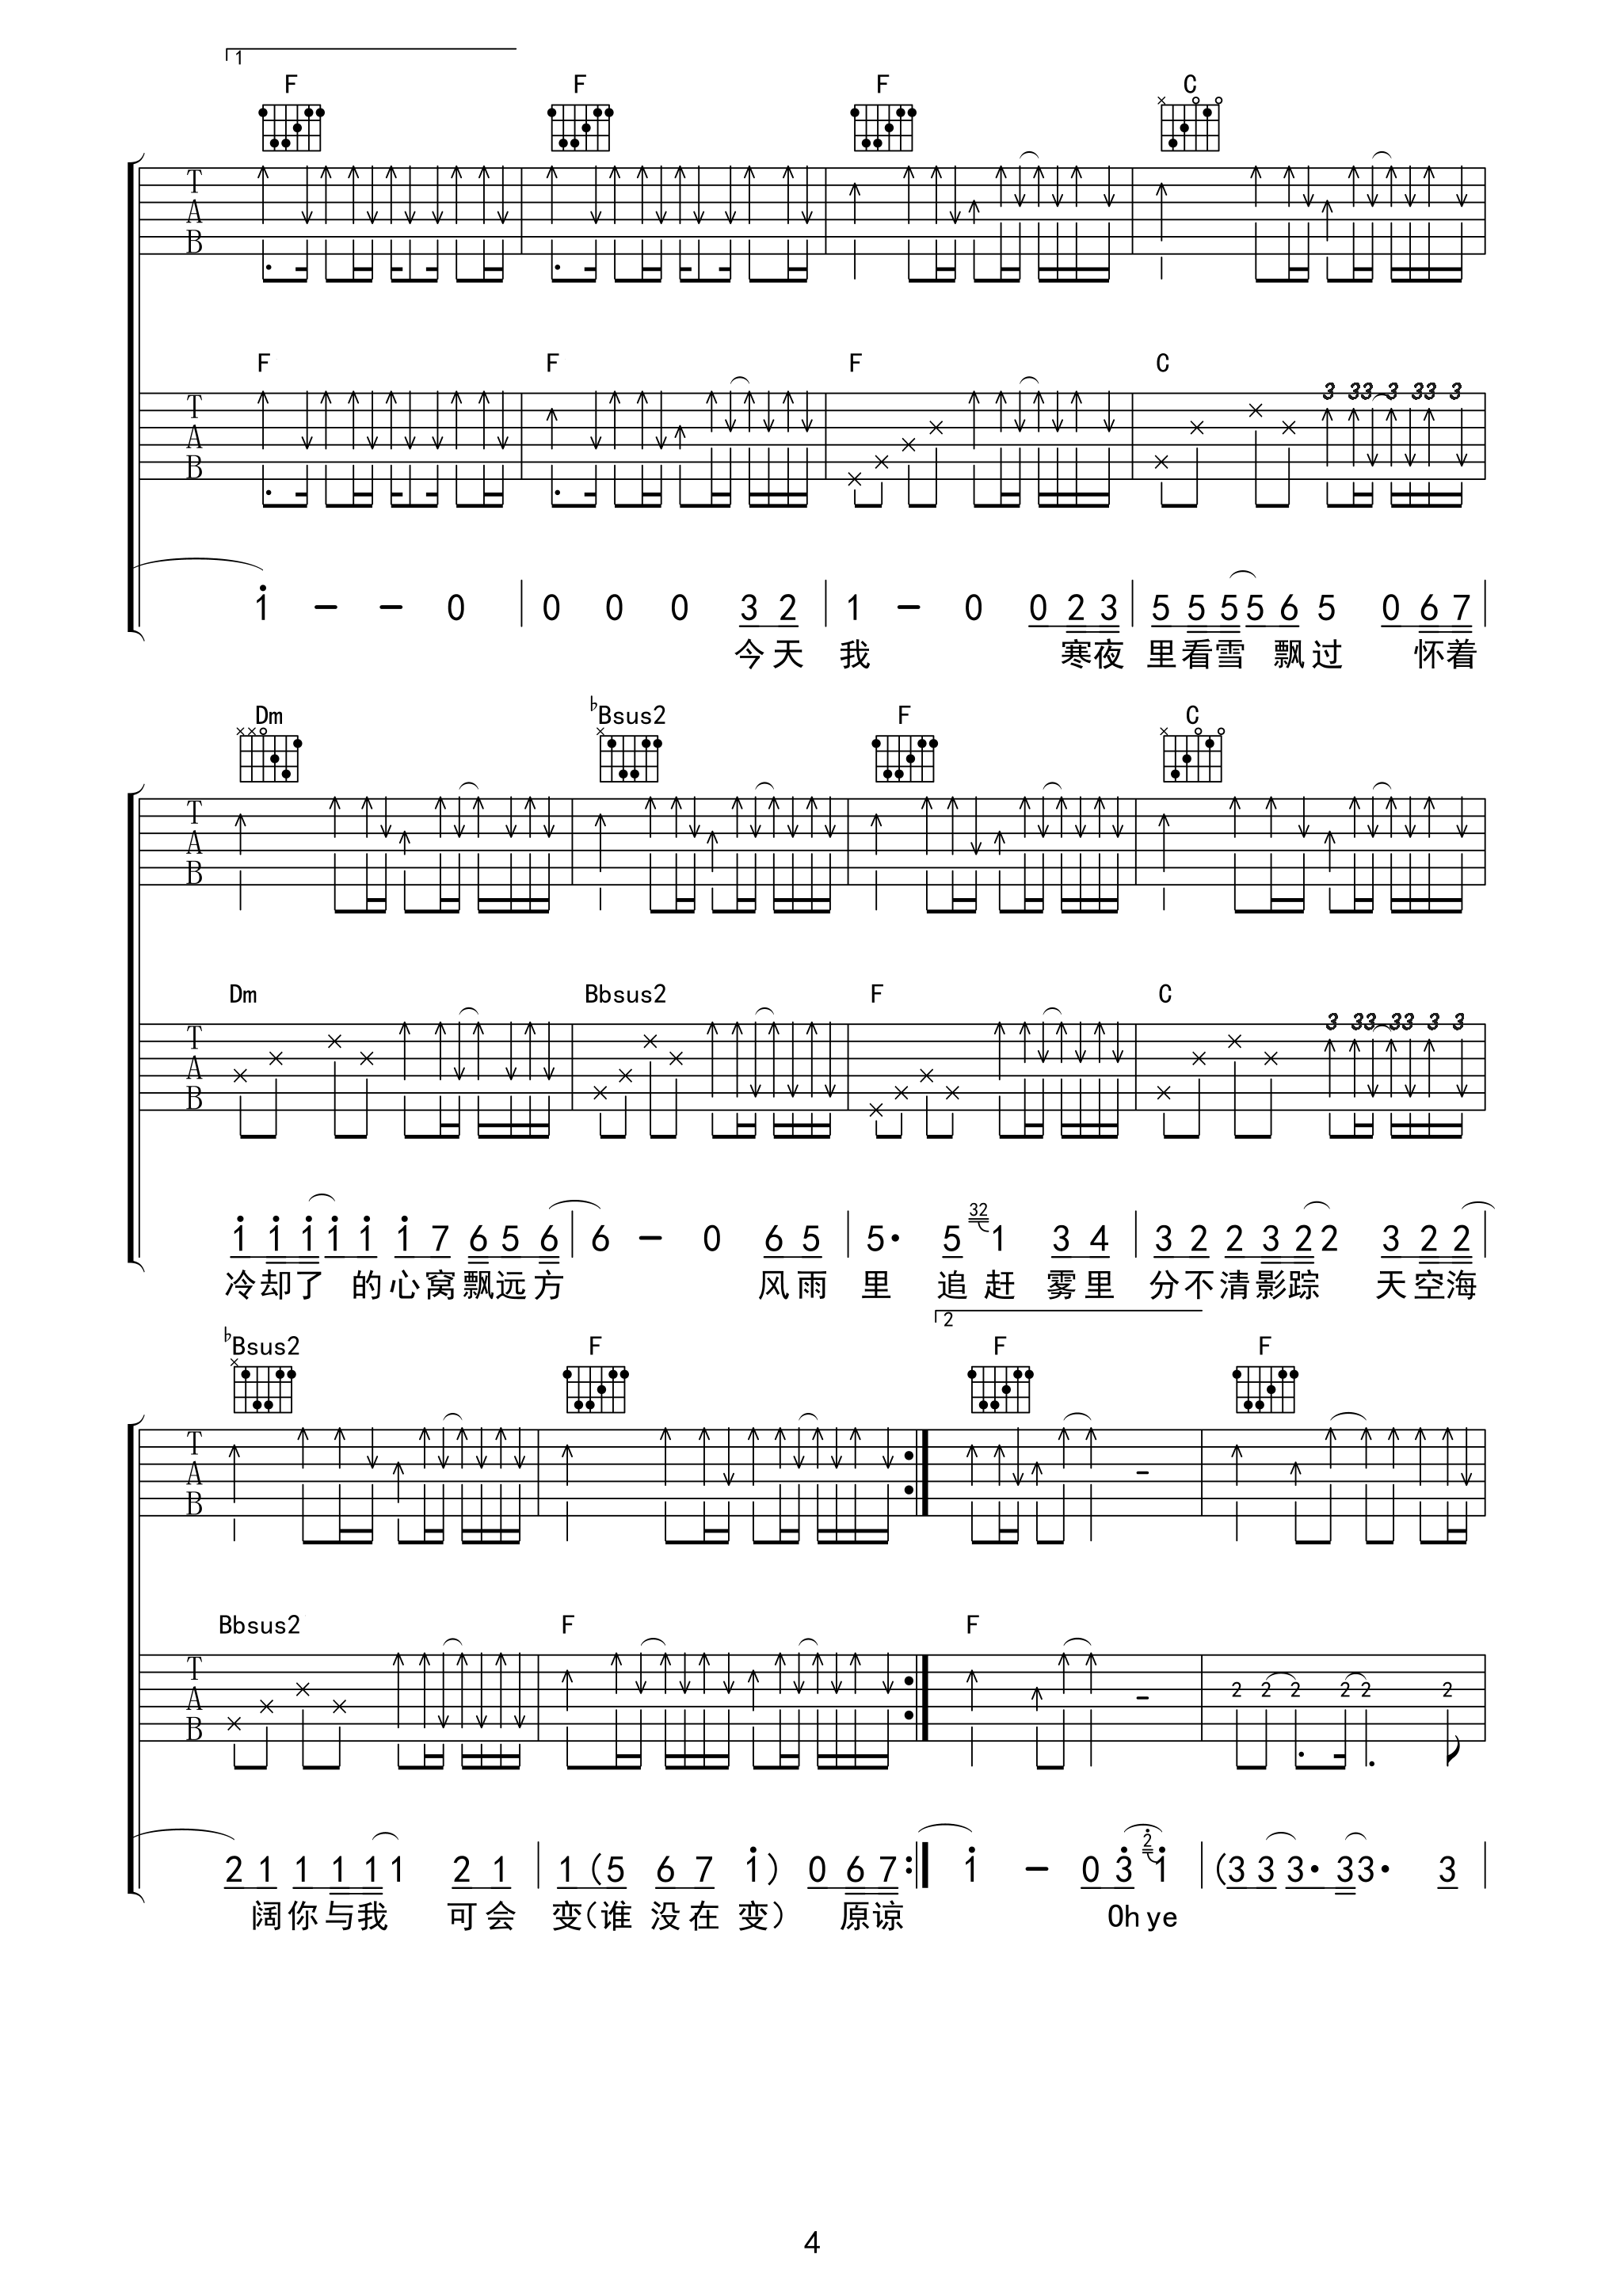 海阔天空吉他谱93版不插电弦心距出品吉他谱第(4)页